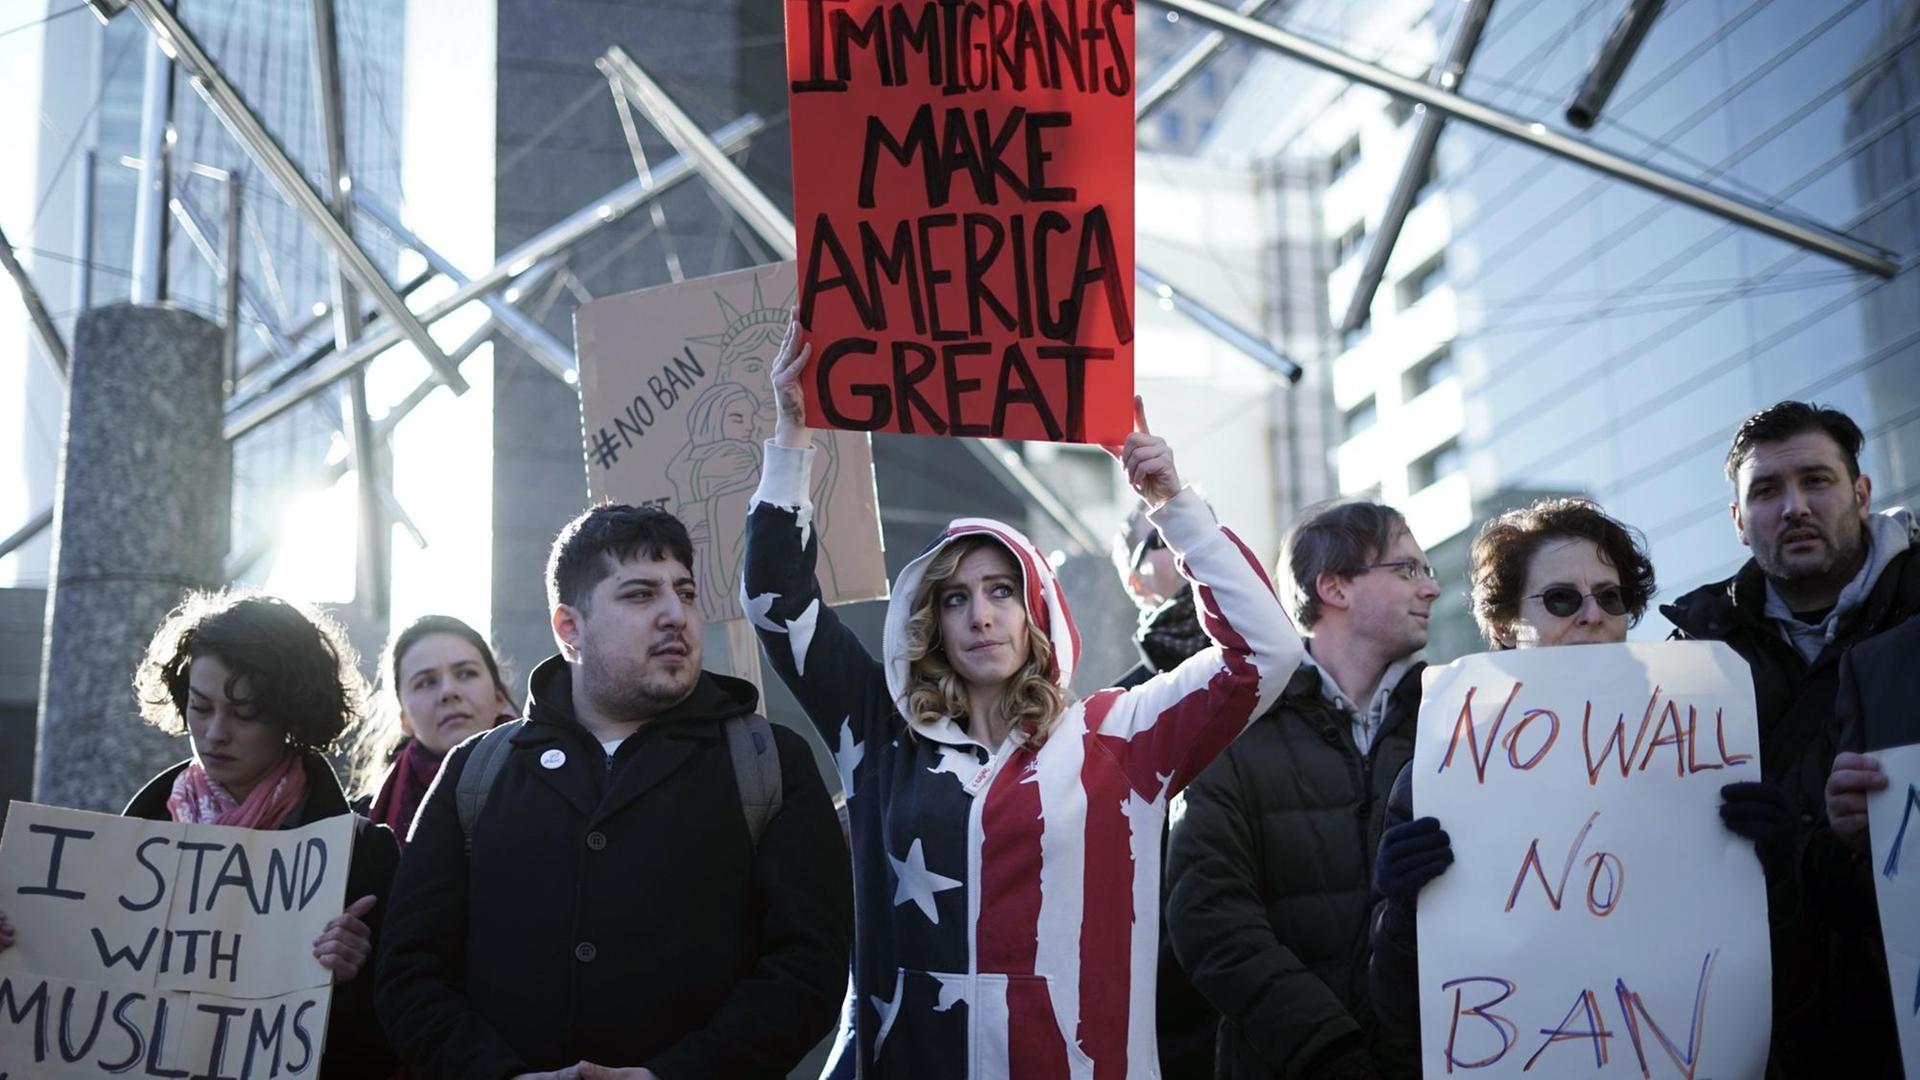 US-Amerikaner und andere im Ausland lebende Menschen demonstrieren am 31.01.2017 vor der US-amerikanischen Botschaft in Tokio (Japan) gegen die Einwanderungspolitik von US-Präsident Trump.